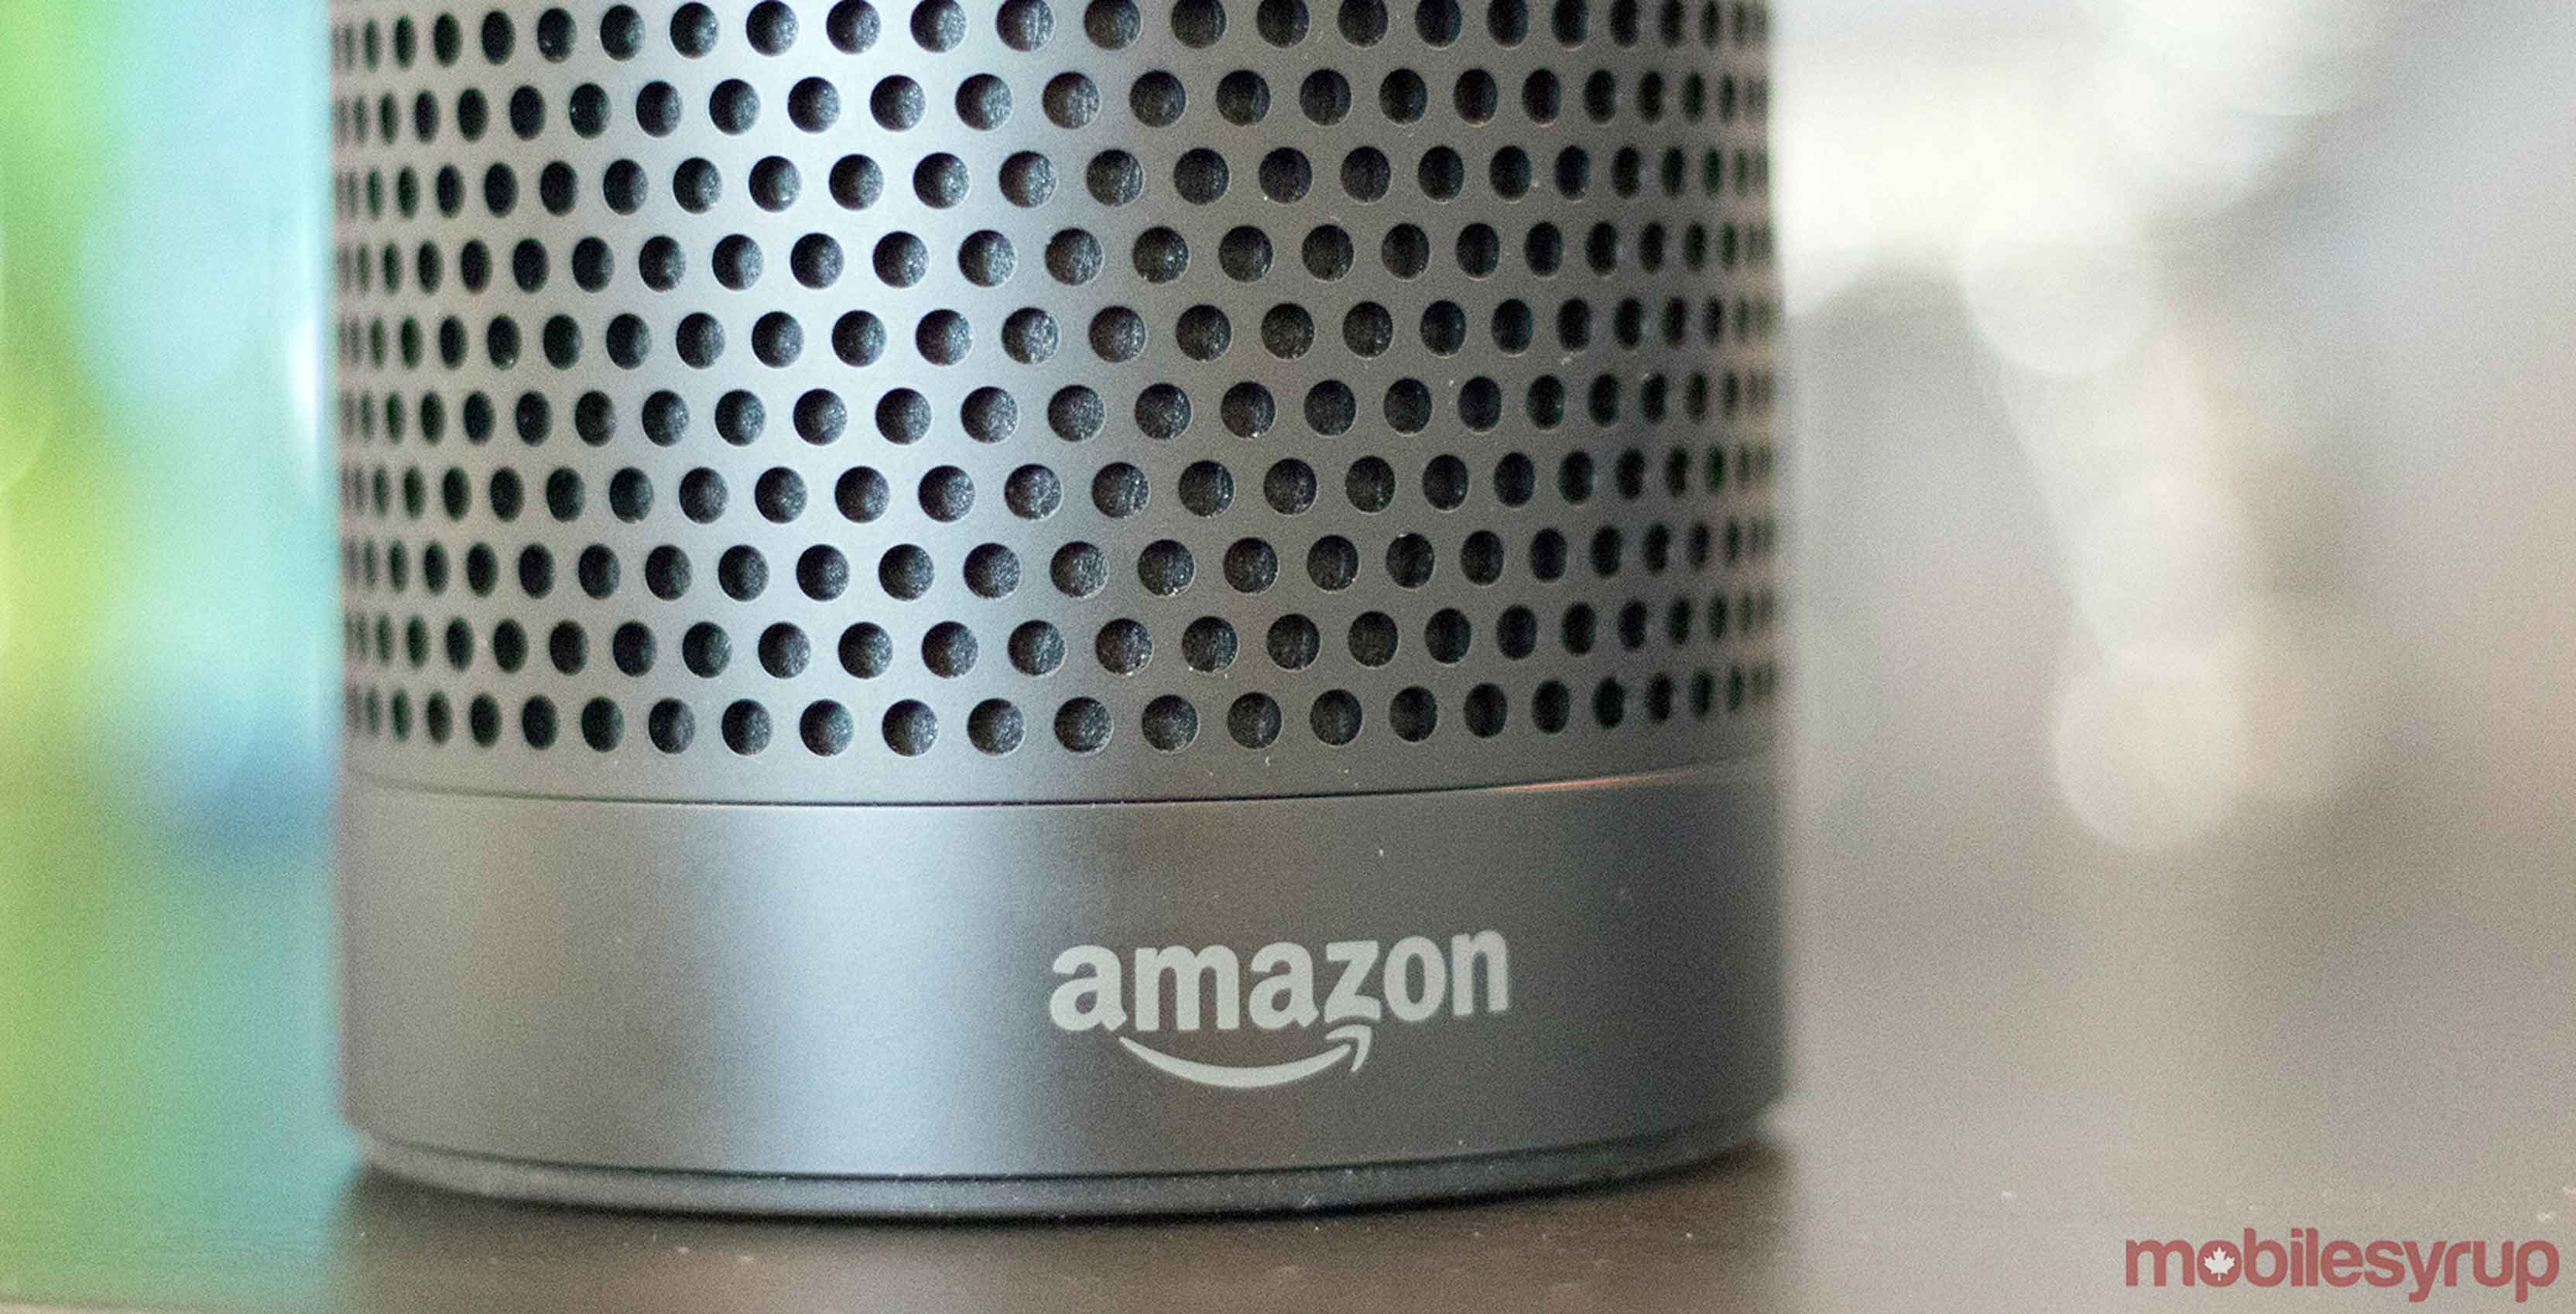 Photo of Amazon Echo